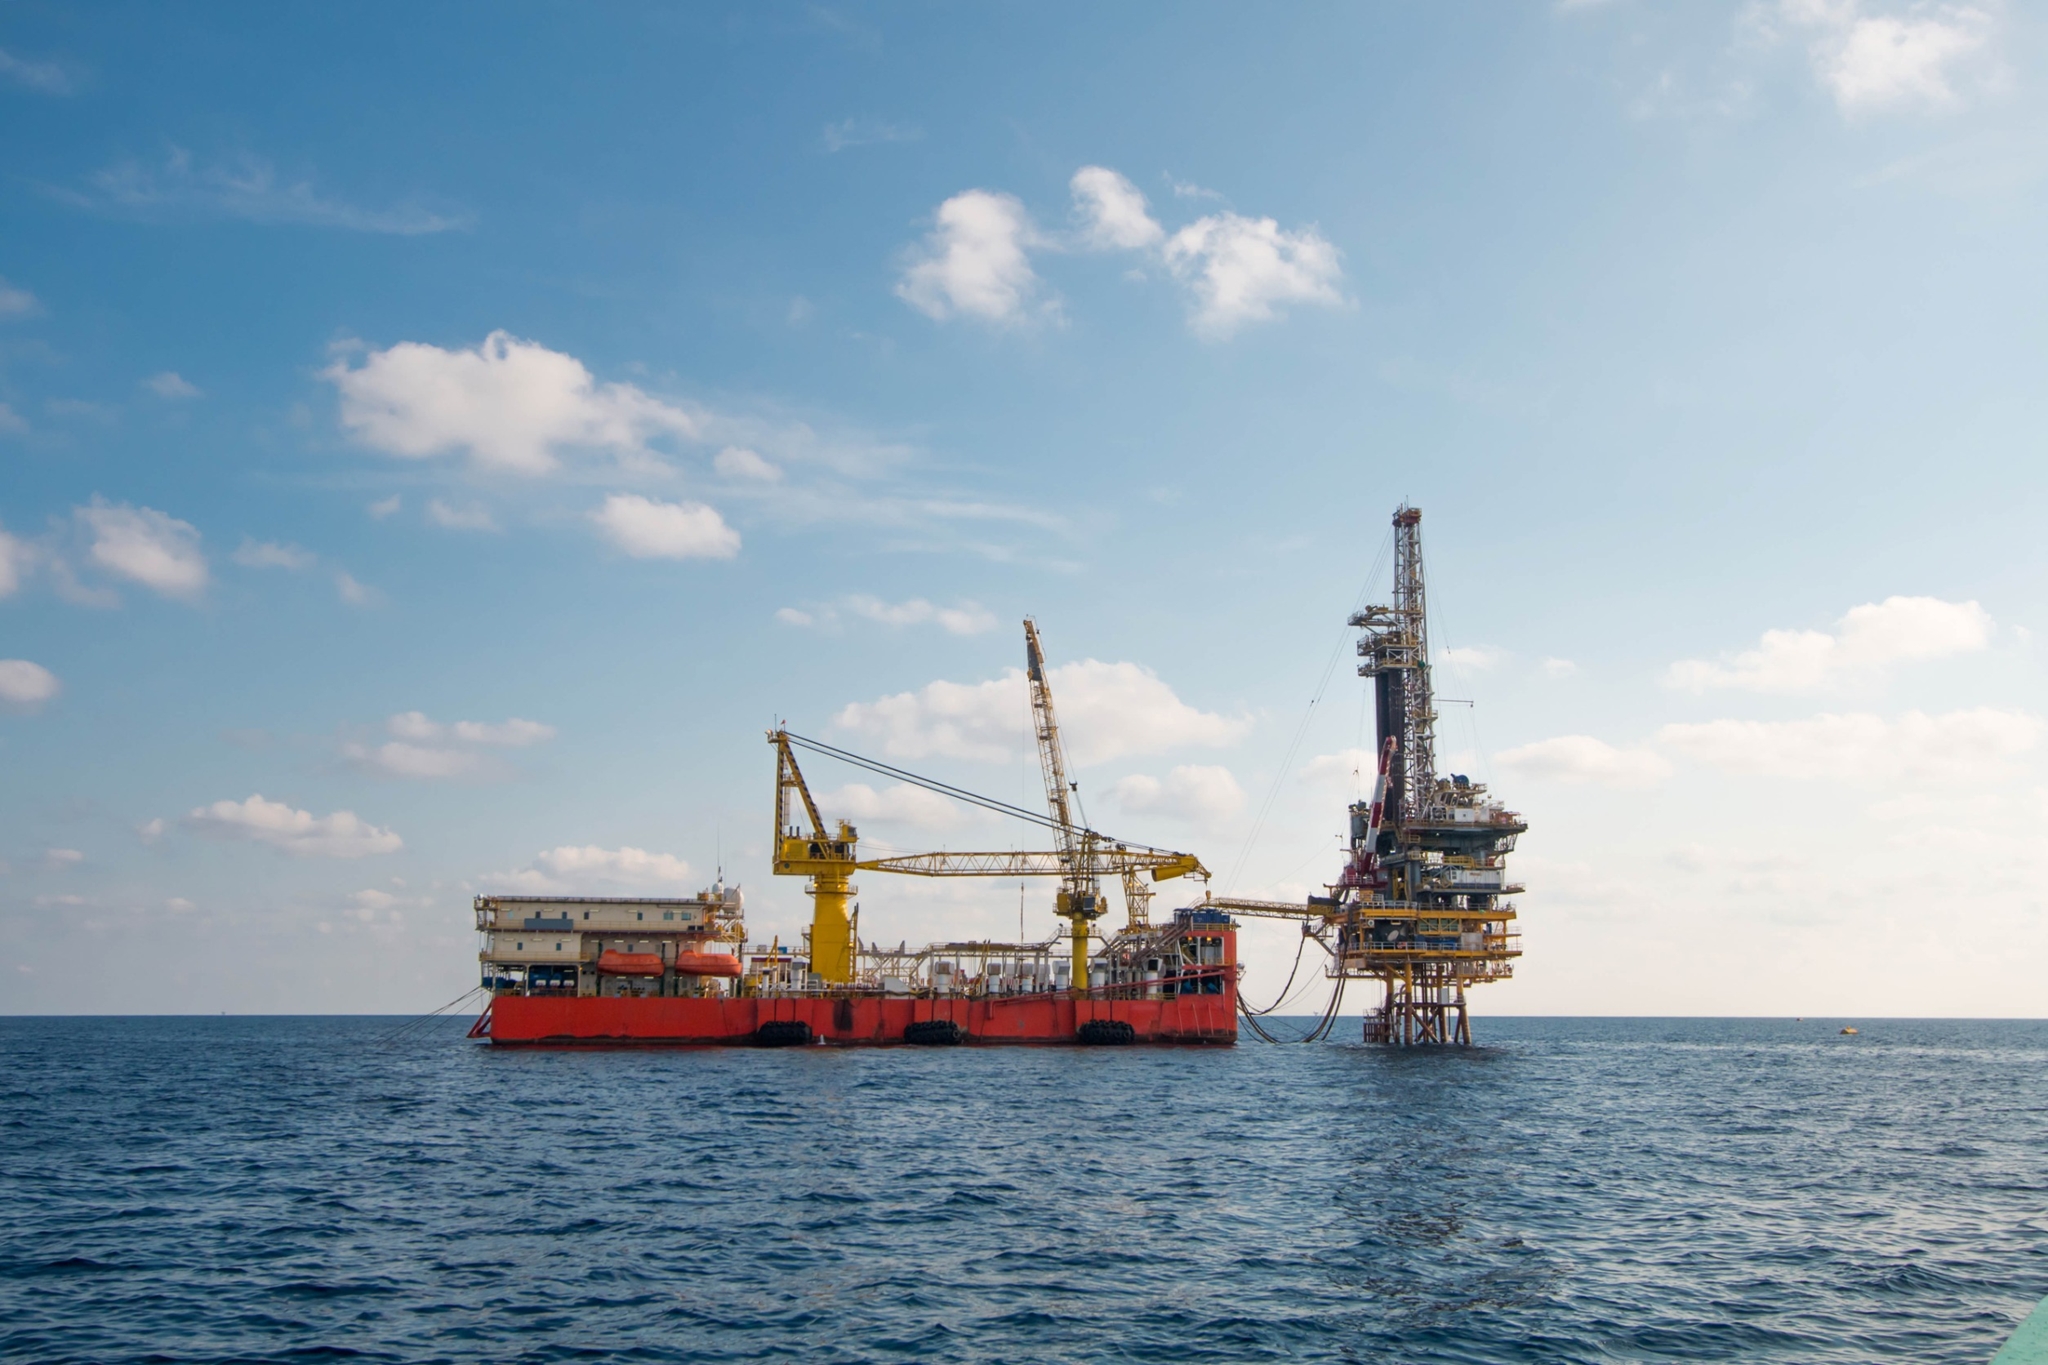 γεώτρηση στην κρήτη αποφασίζει η exxonmobil- ενδείξεις για μεγάλη δομή φυσικού αερίου